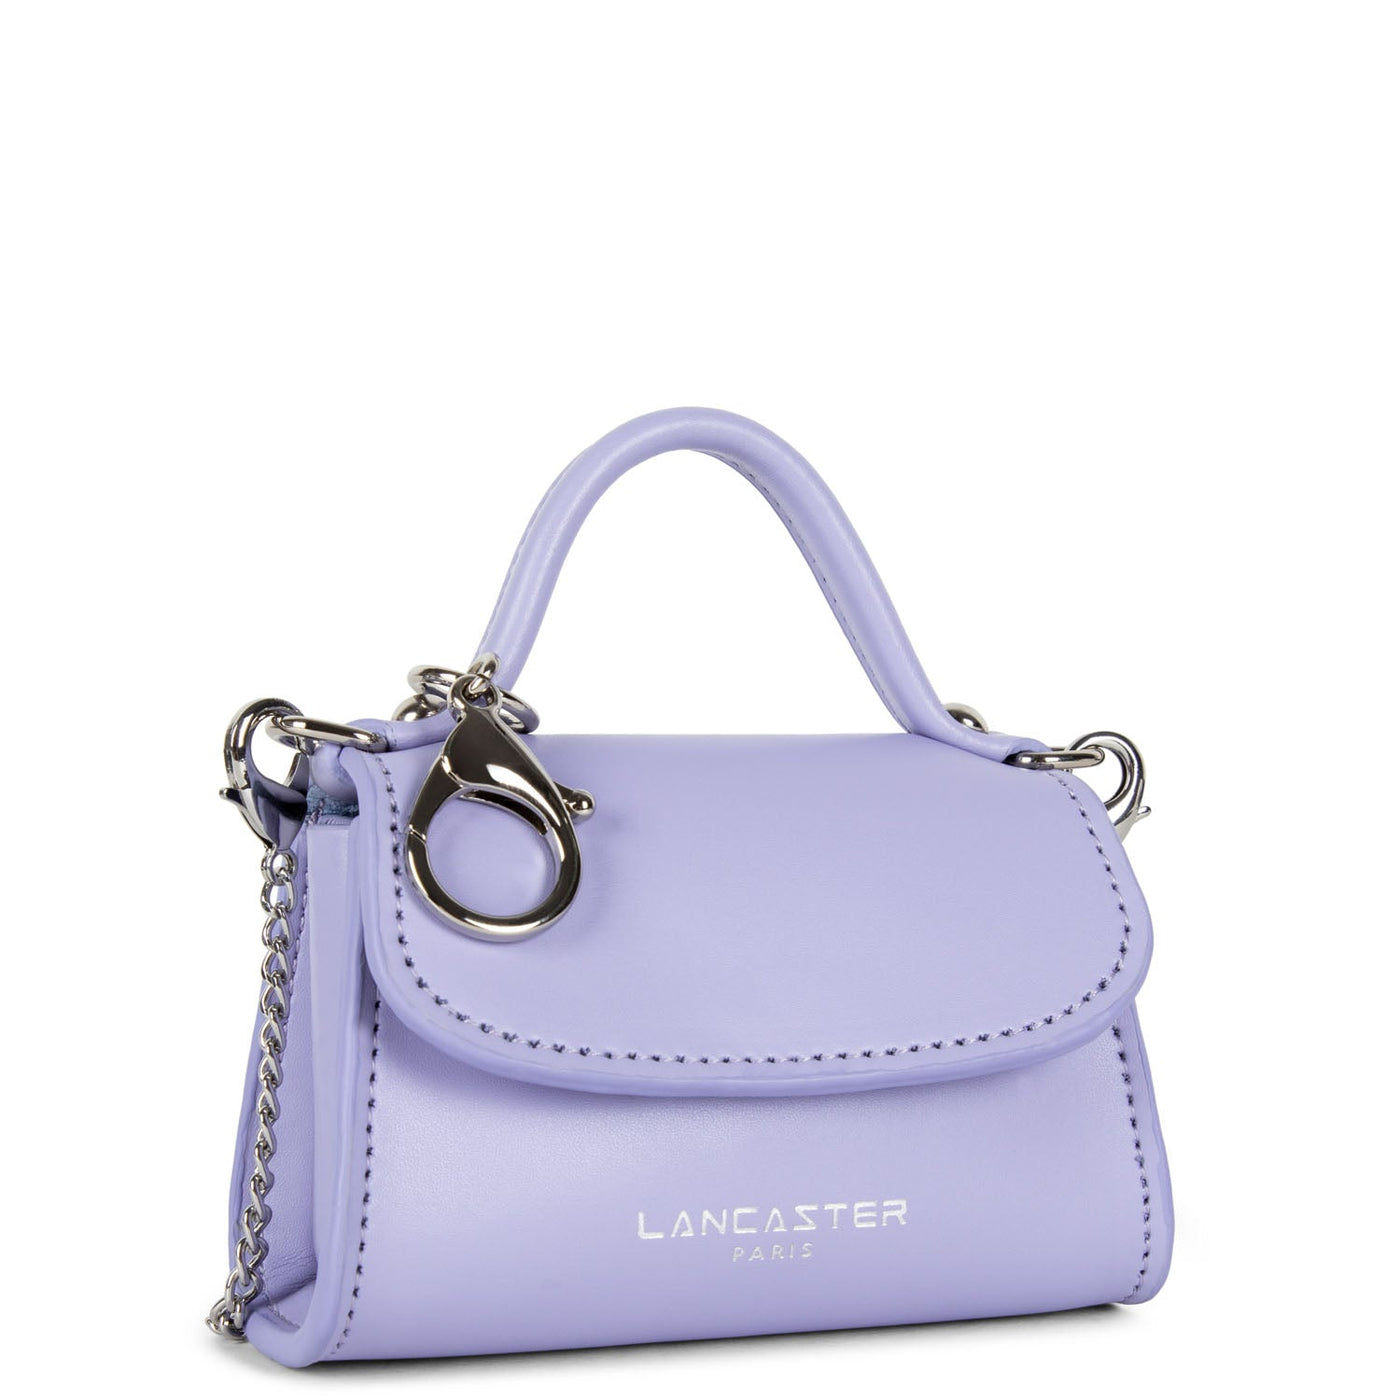 mini coin purse - suave even #couleur_lavande